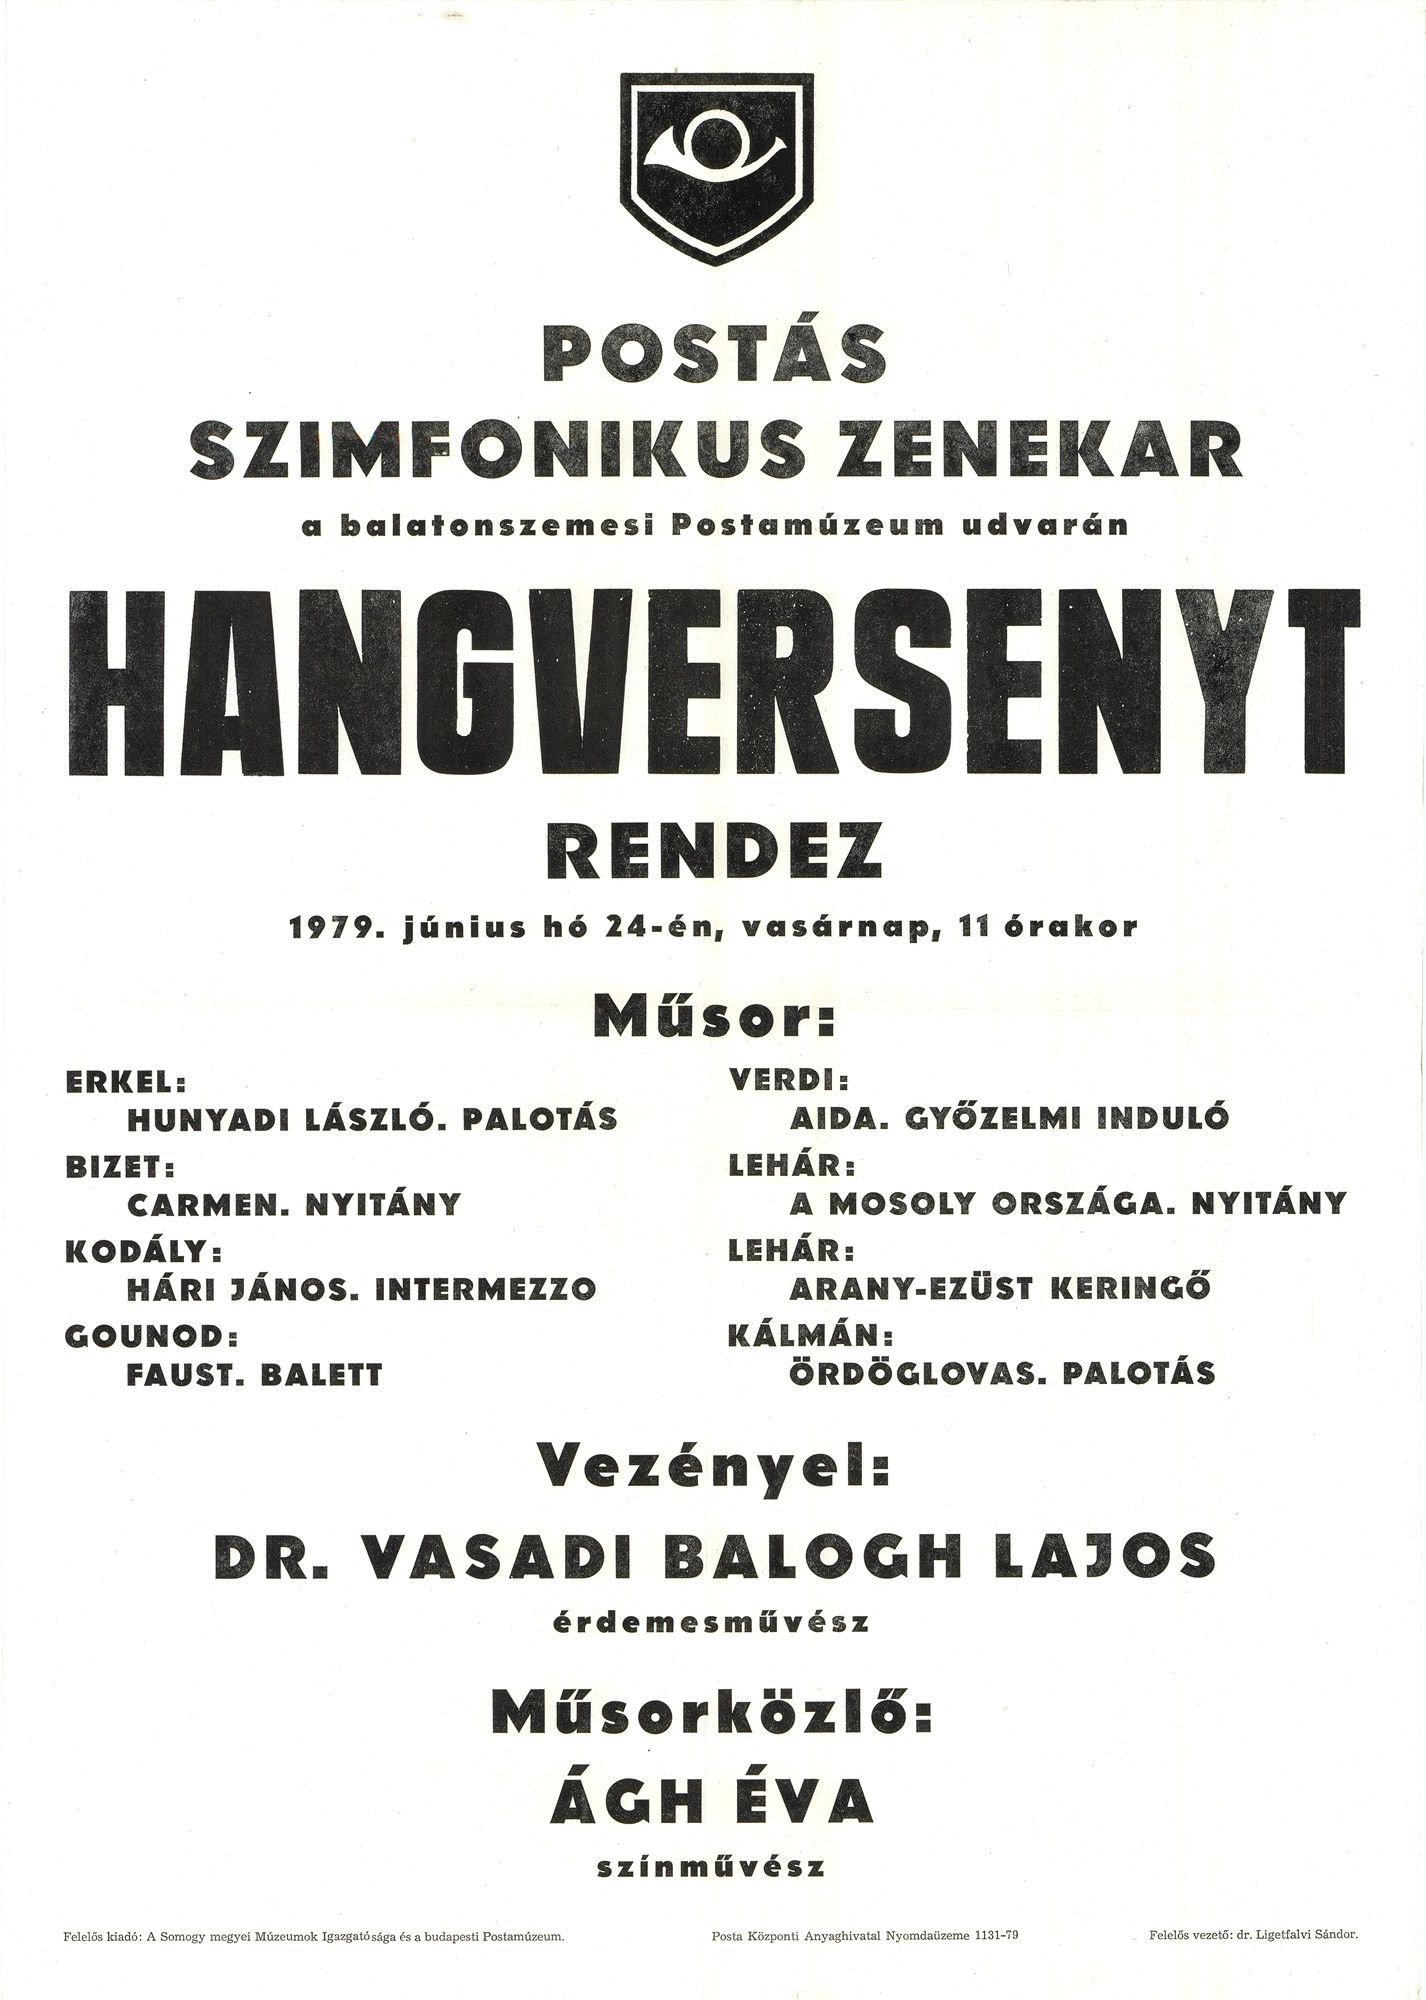 Plakát - Postás Szimfonikus Zenekar, 1979 (Postamúzeum CC BY-NC-SA)